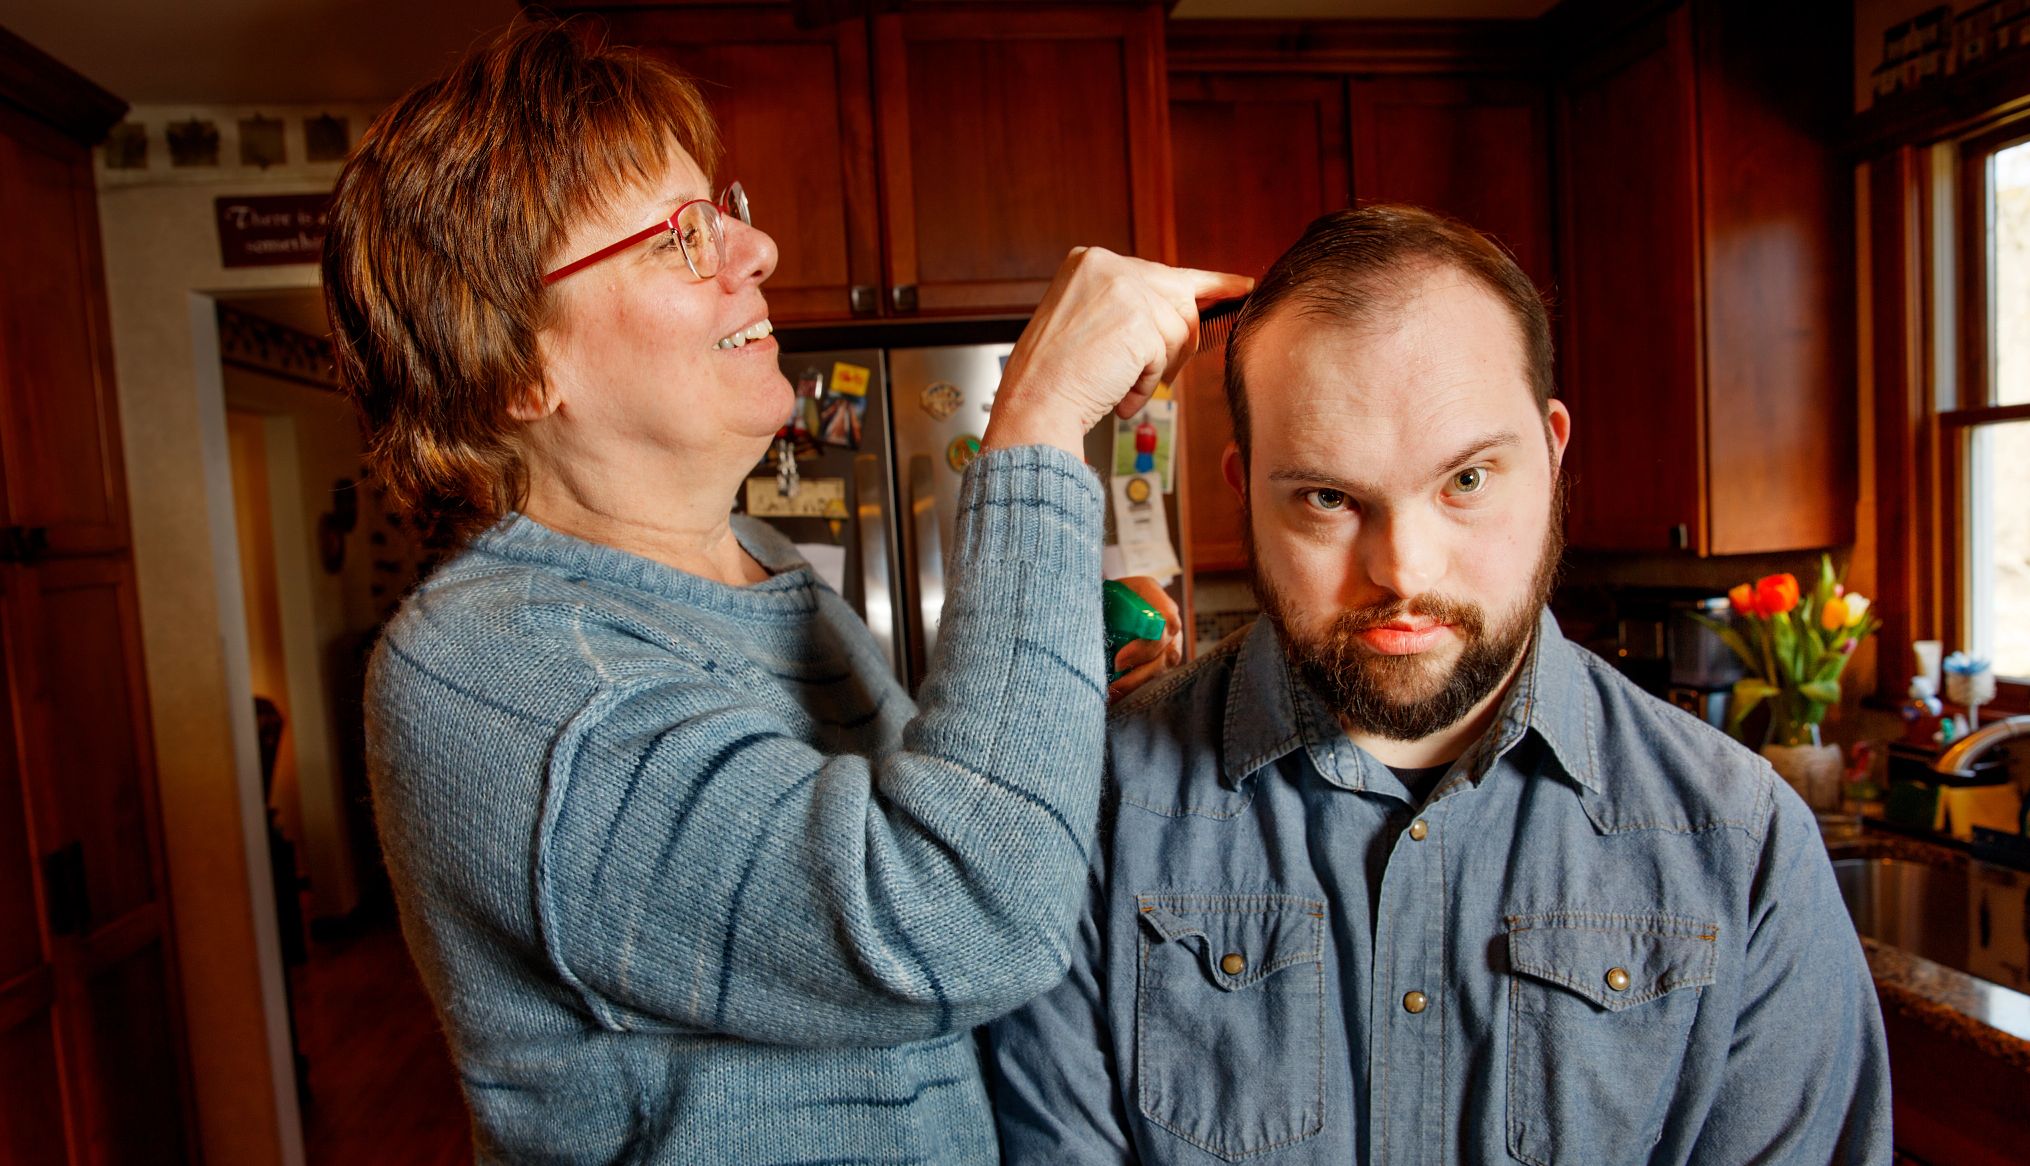 jeanne piorkowski le corta el pelo a su hijo ray en su casa de nueva jersey